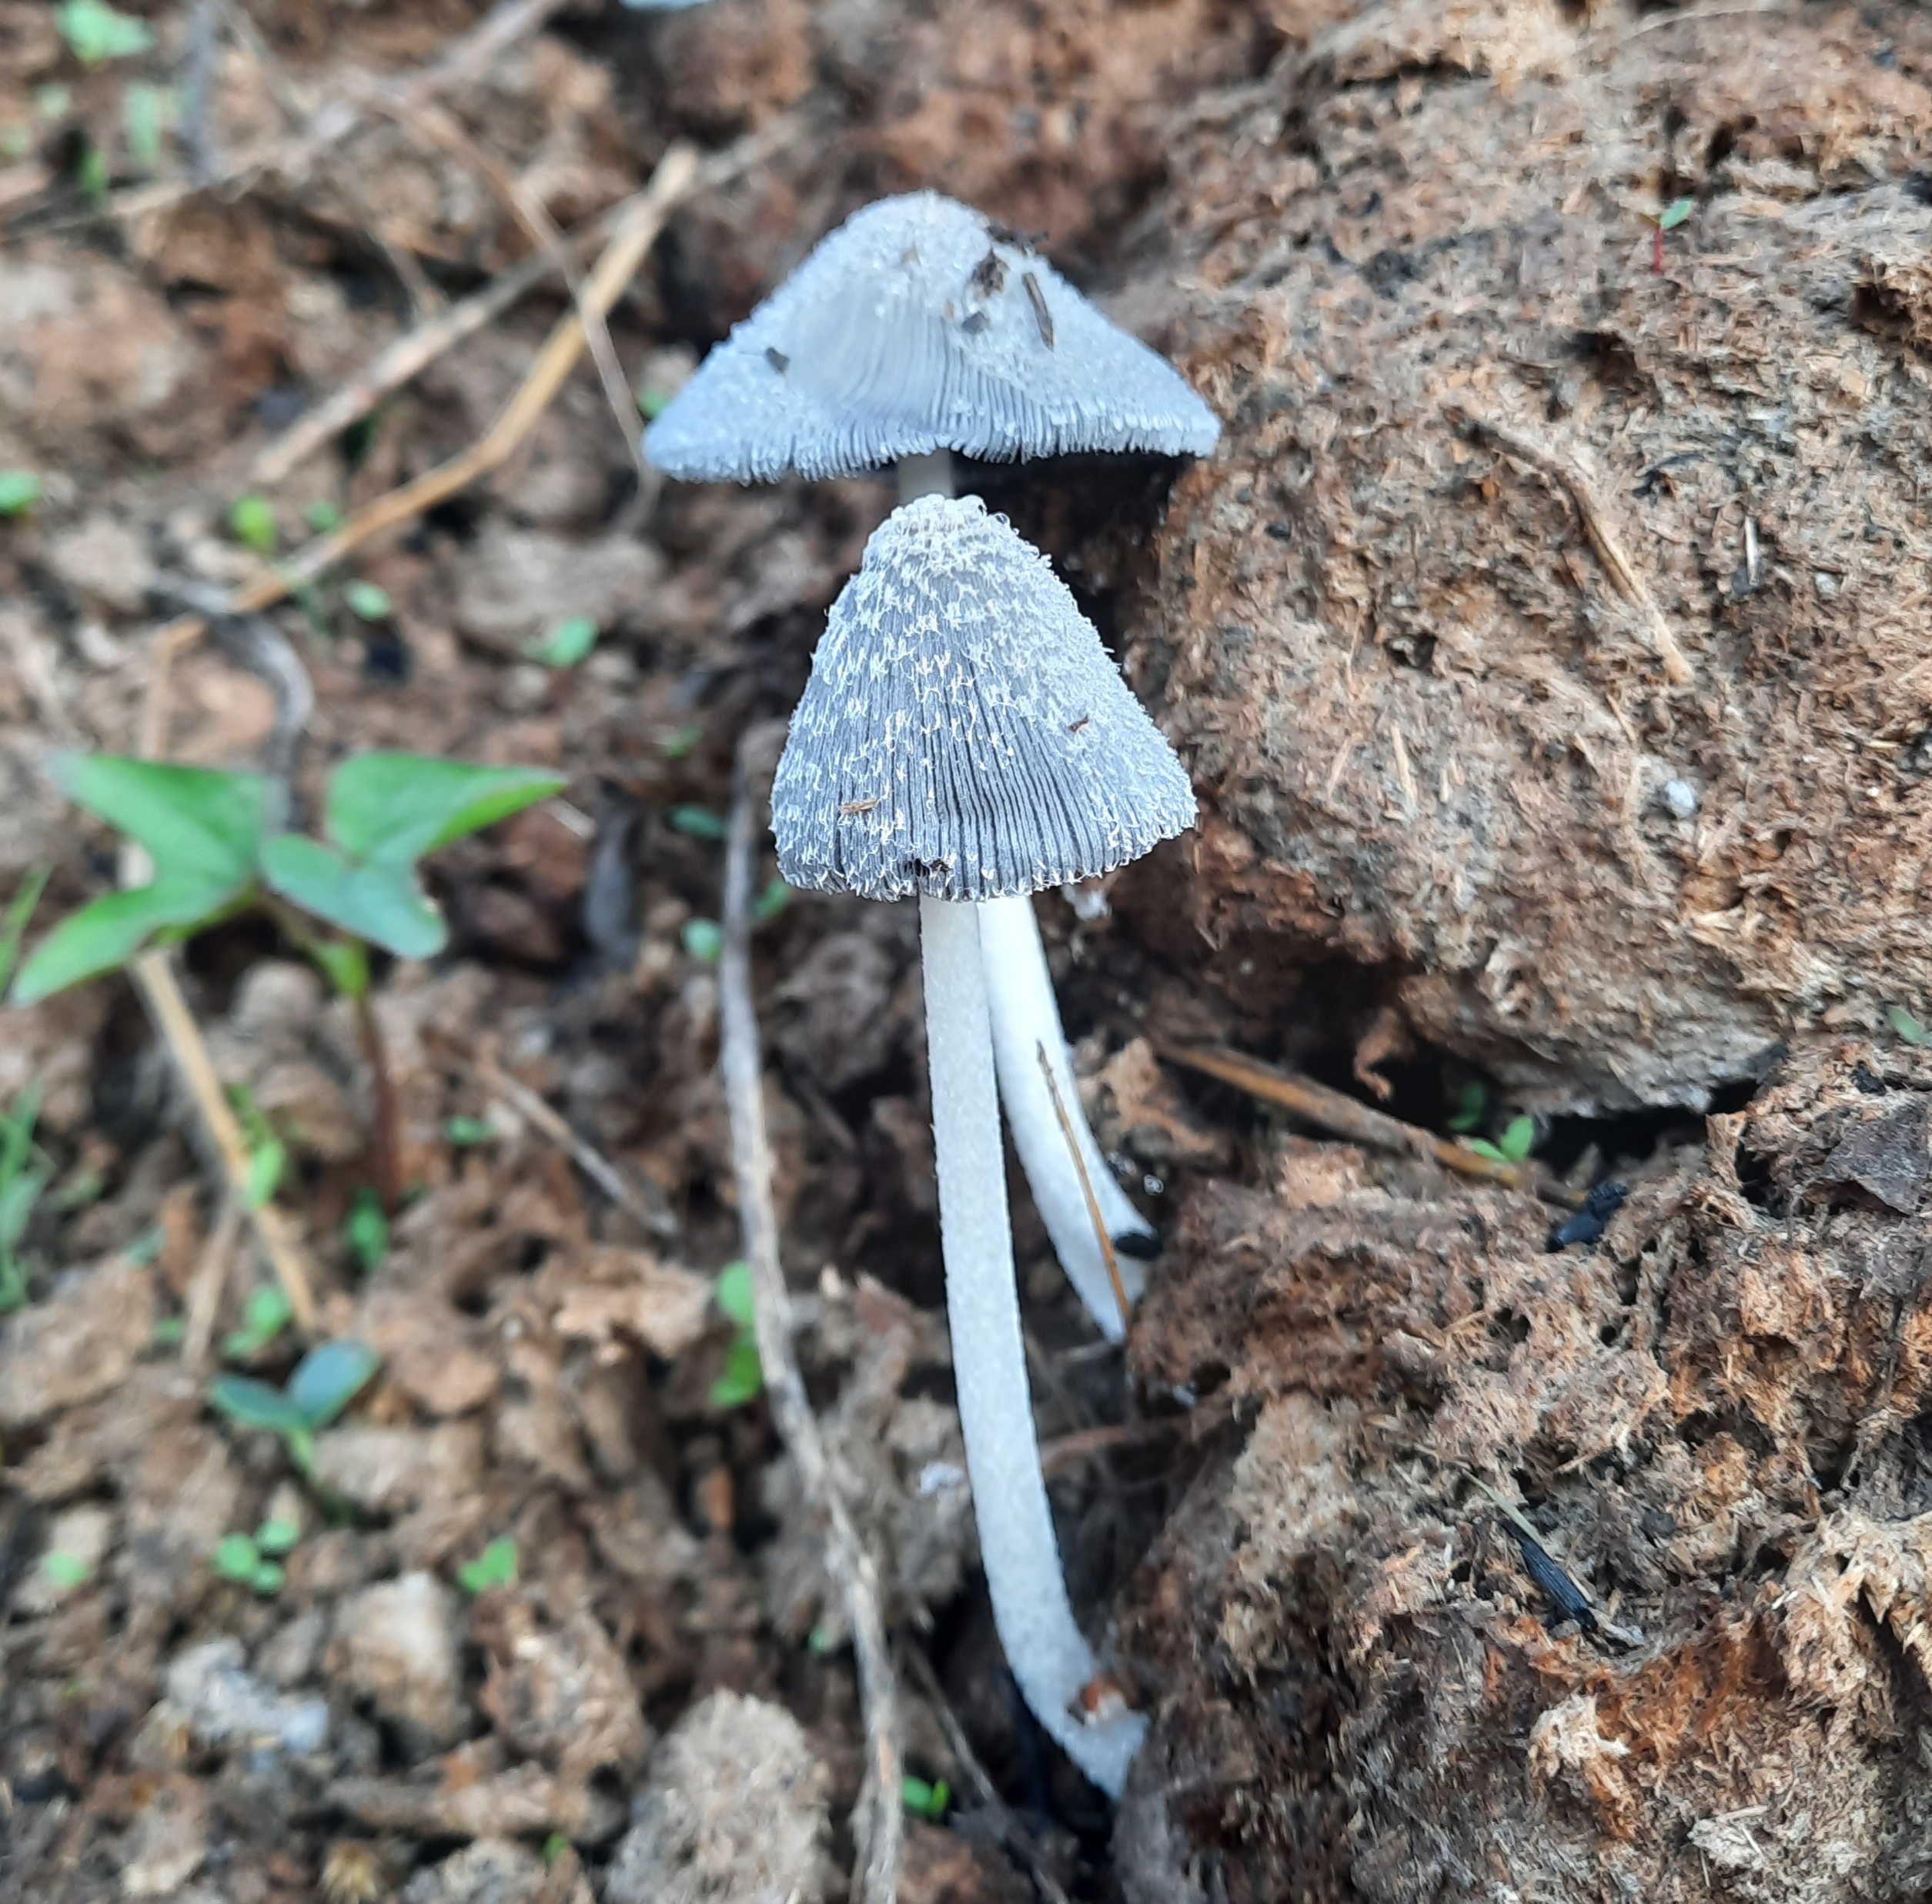 Mushroom plants